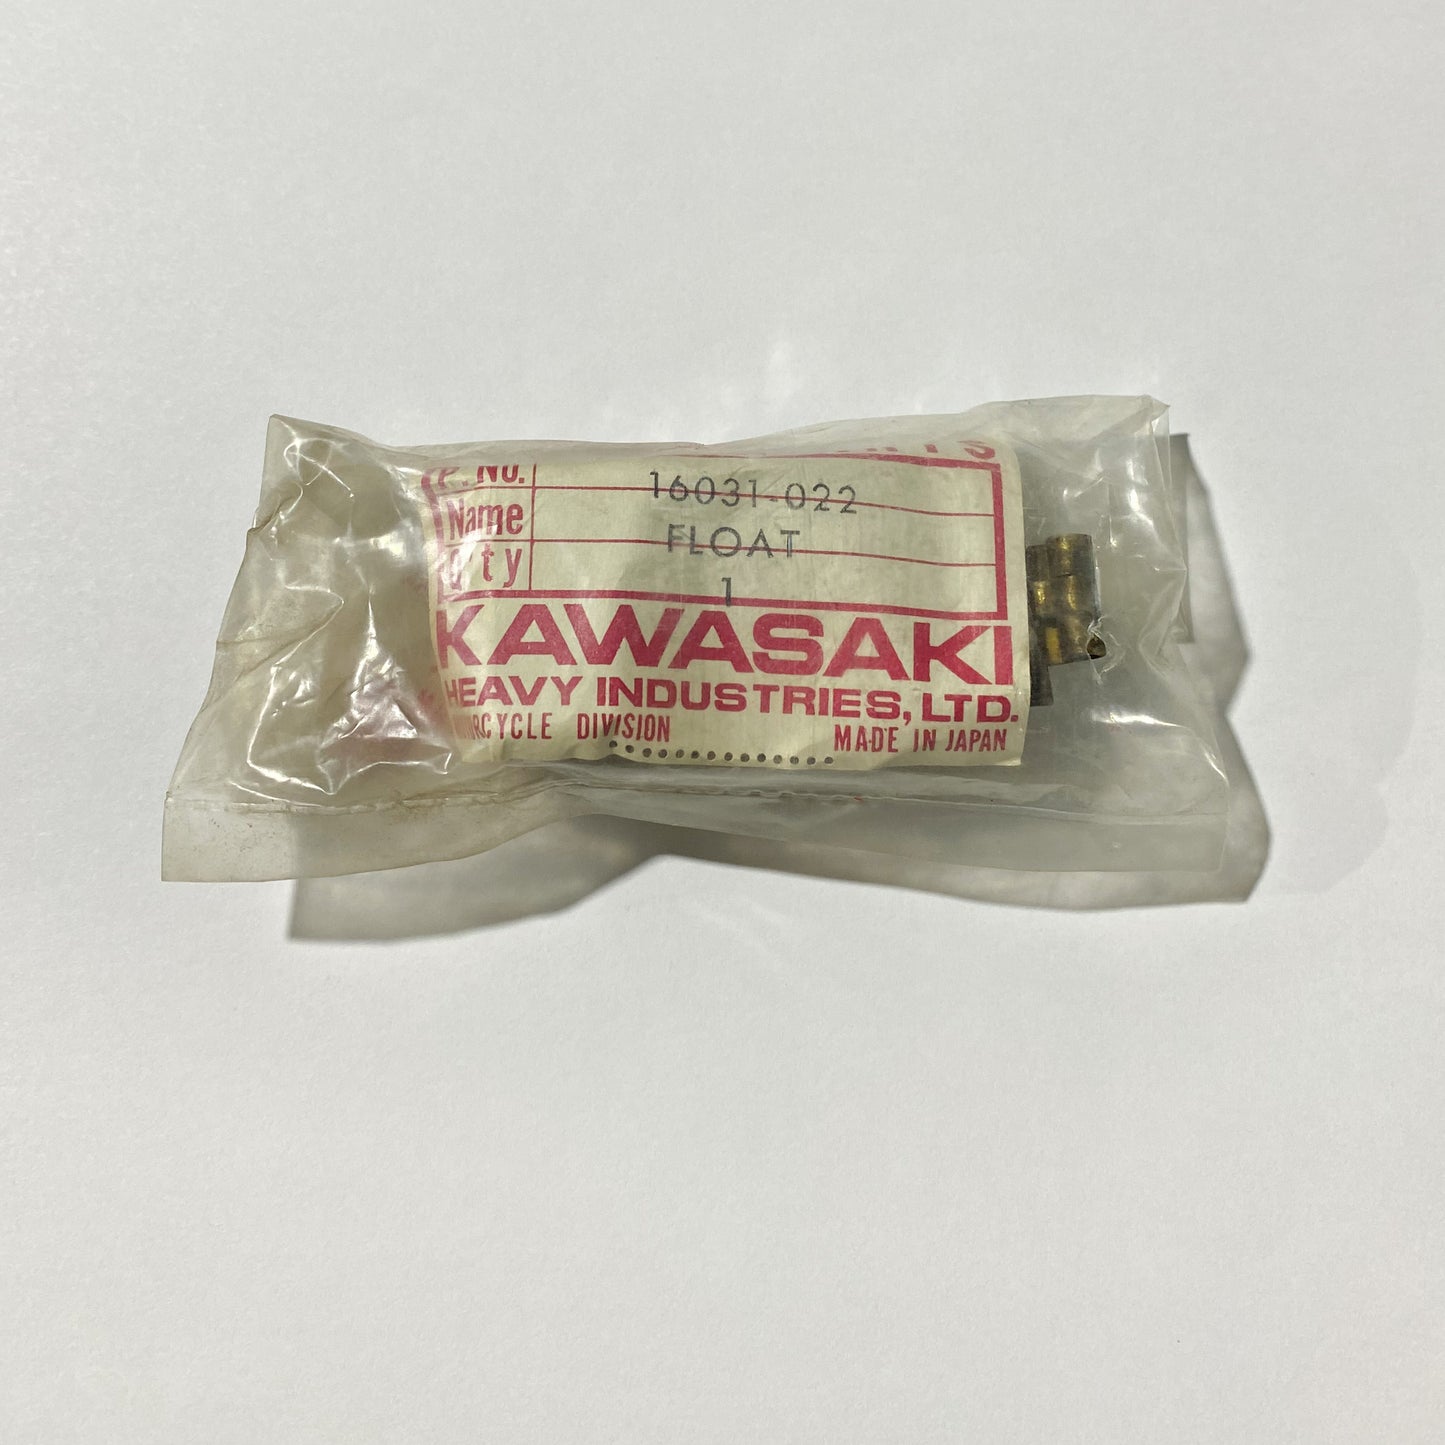 Kawasaki Float 16031-022